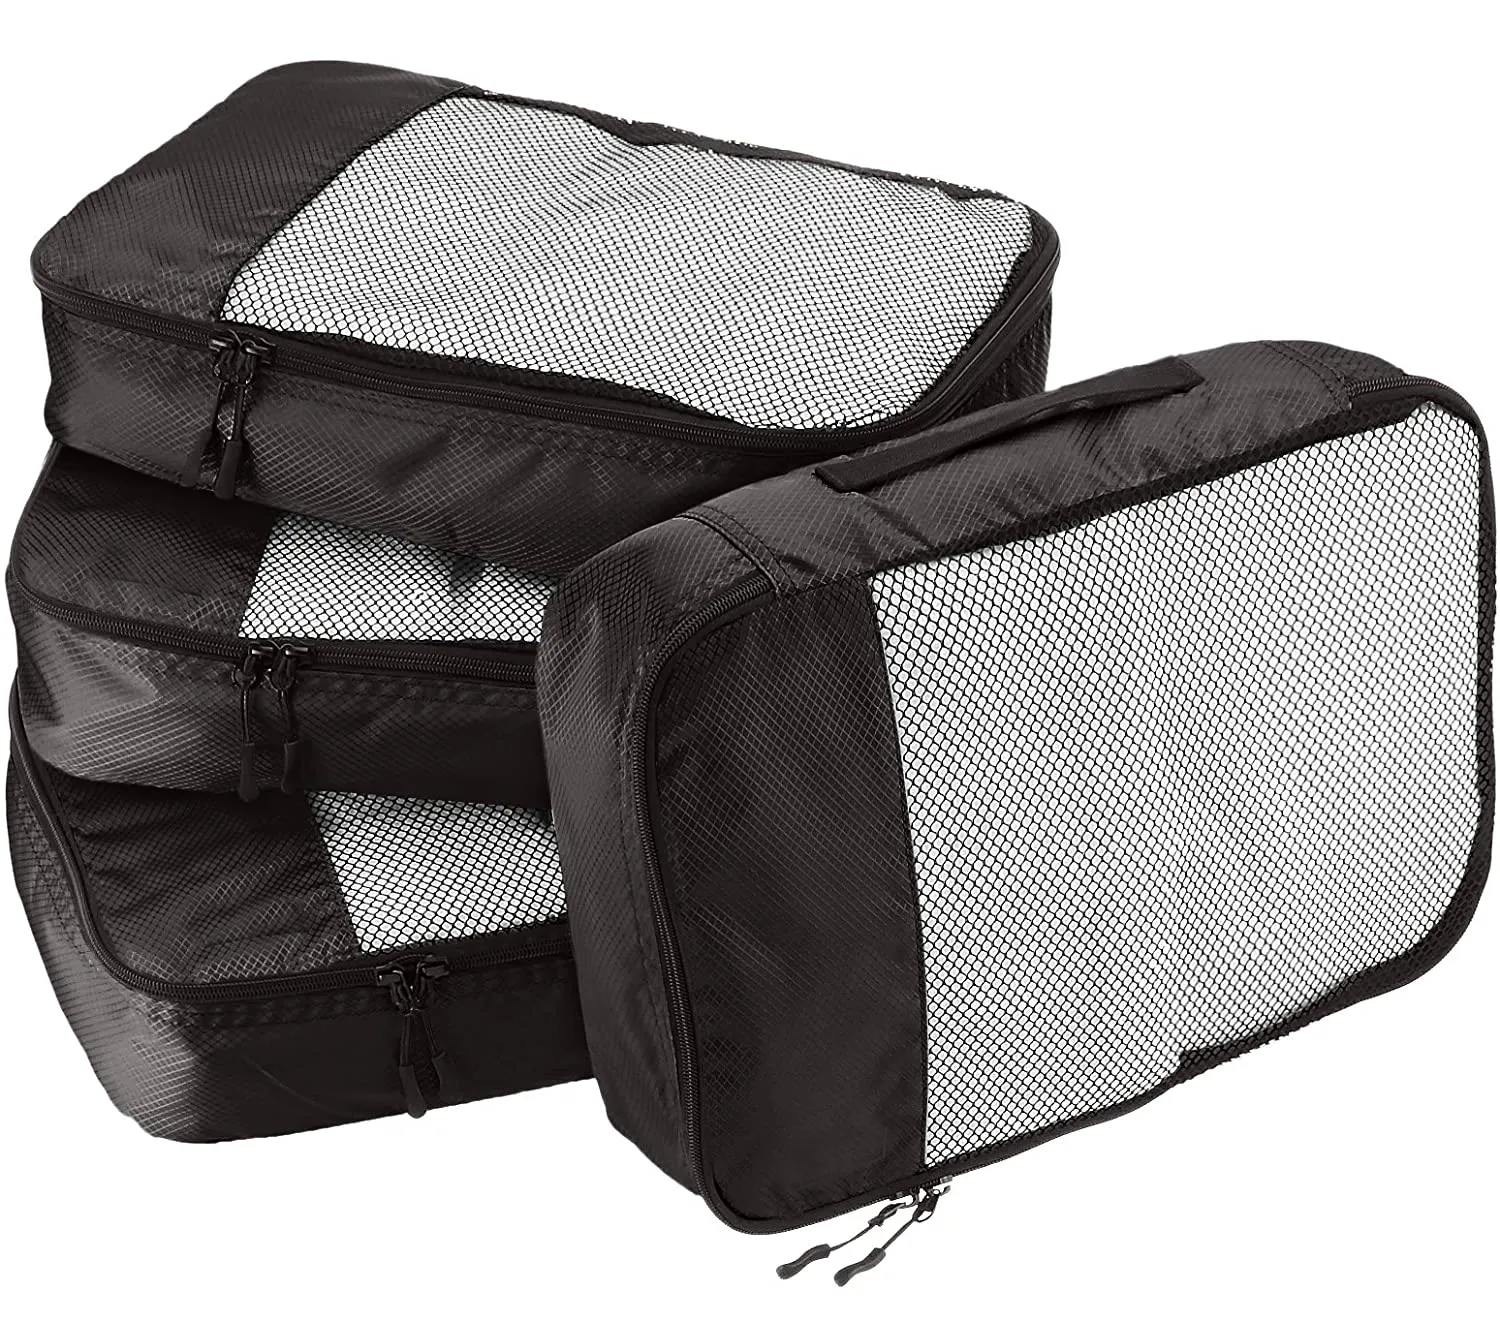 Foldable Travel Bag 4 Set Black Travel Foldable Suitcase Organizer Lightweight Luggage Storage Bag